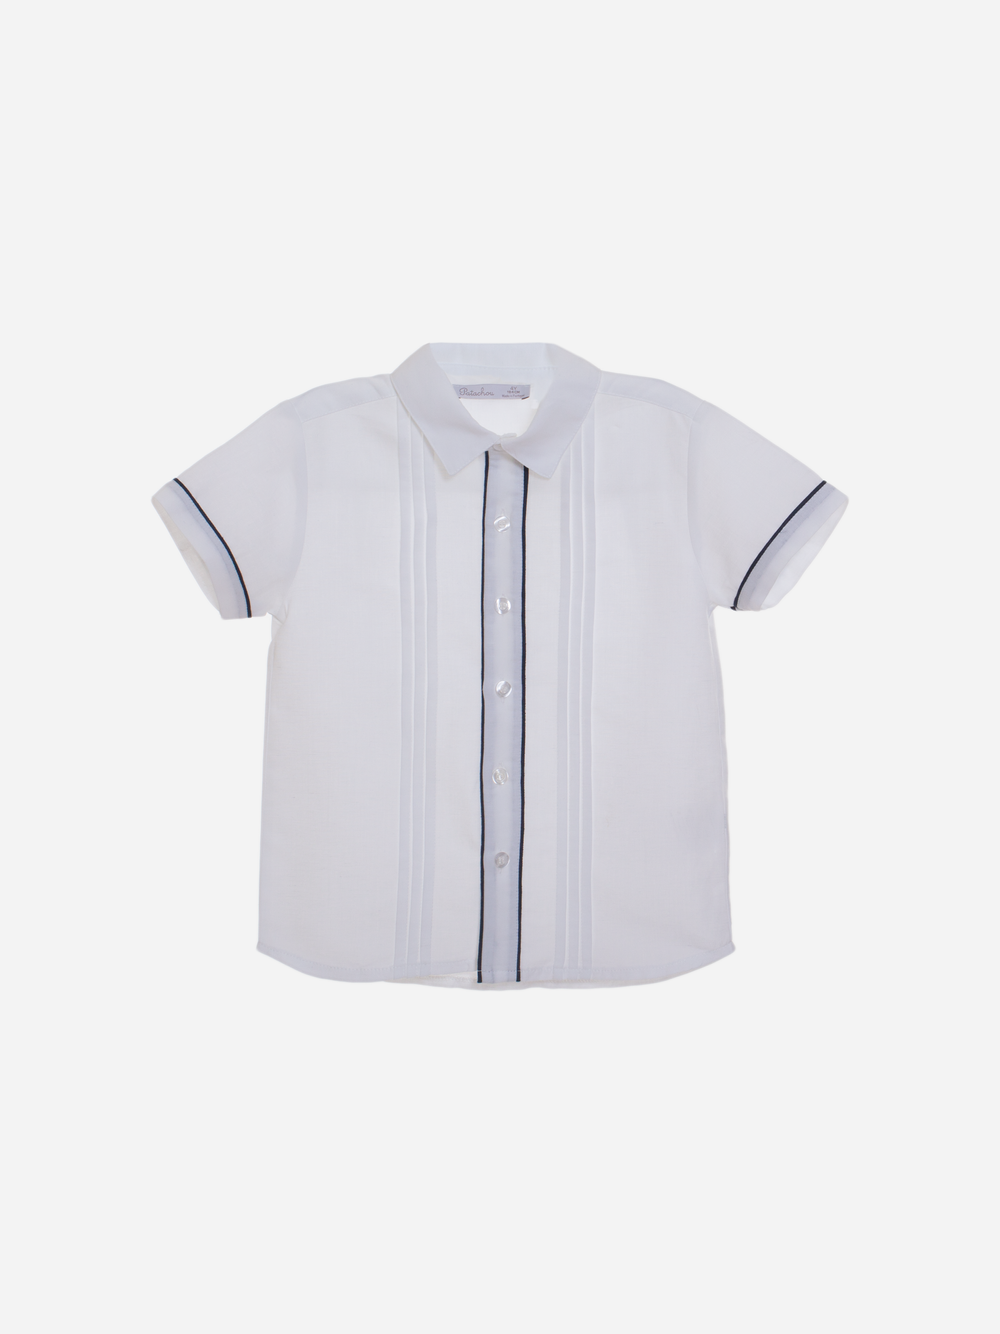 Camisa de linho branco com detalhes em azul marinho